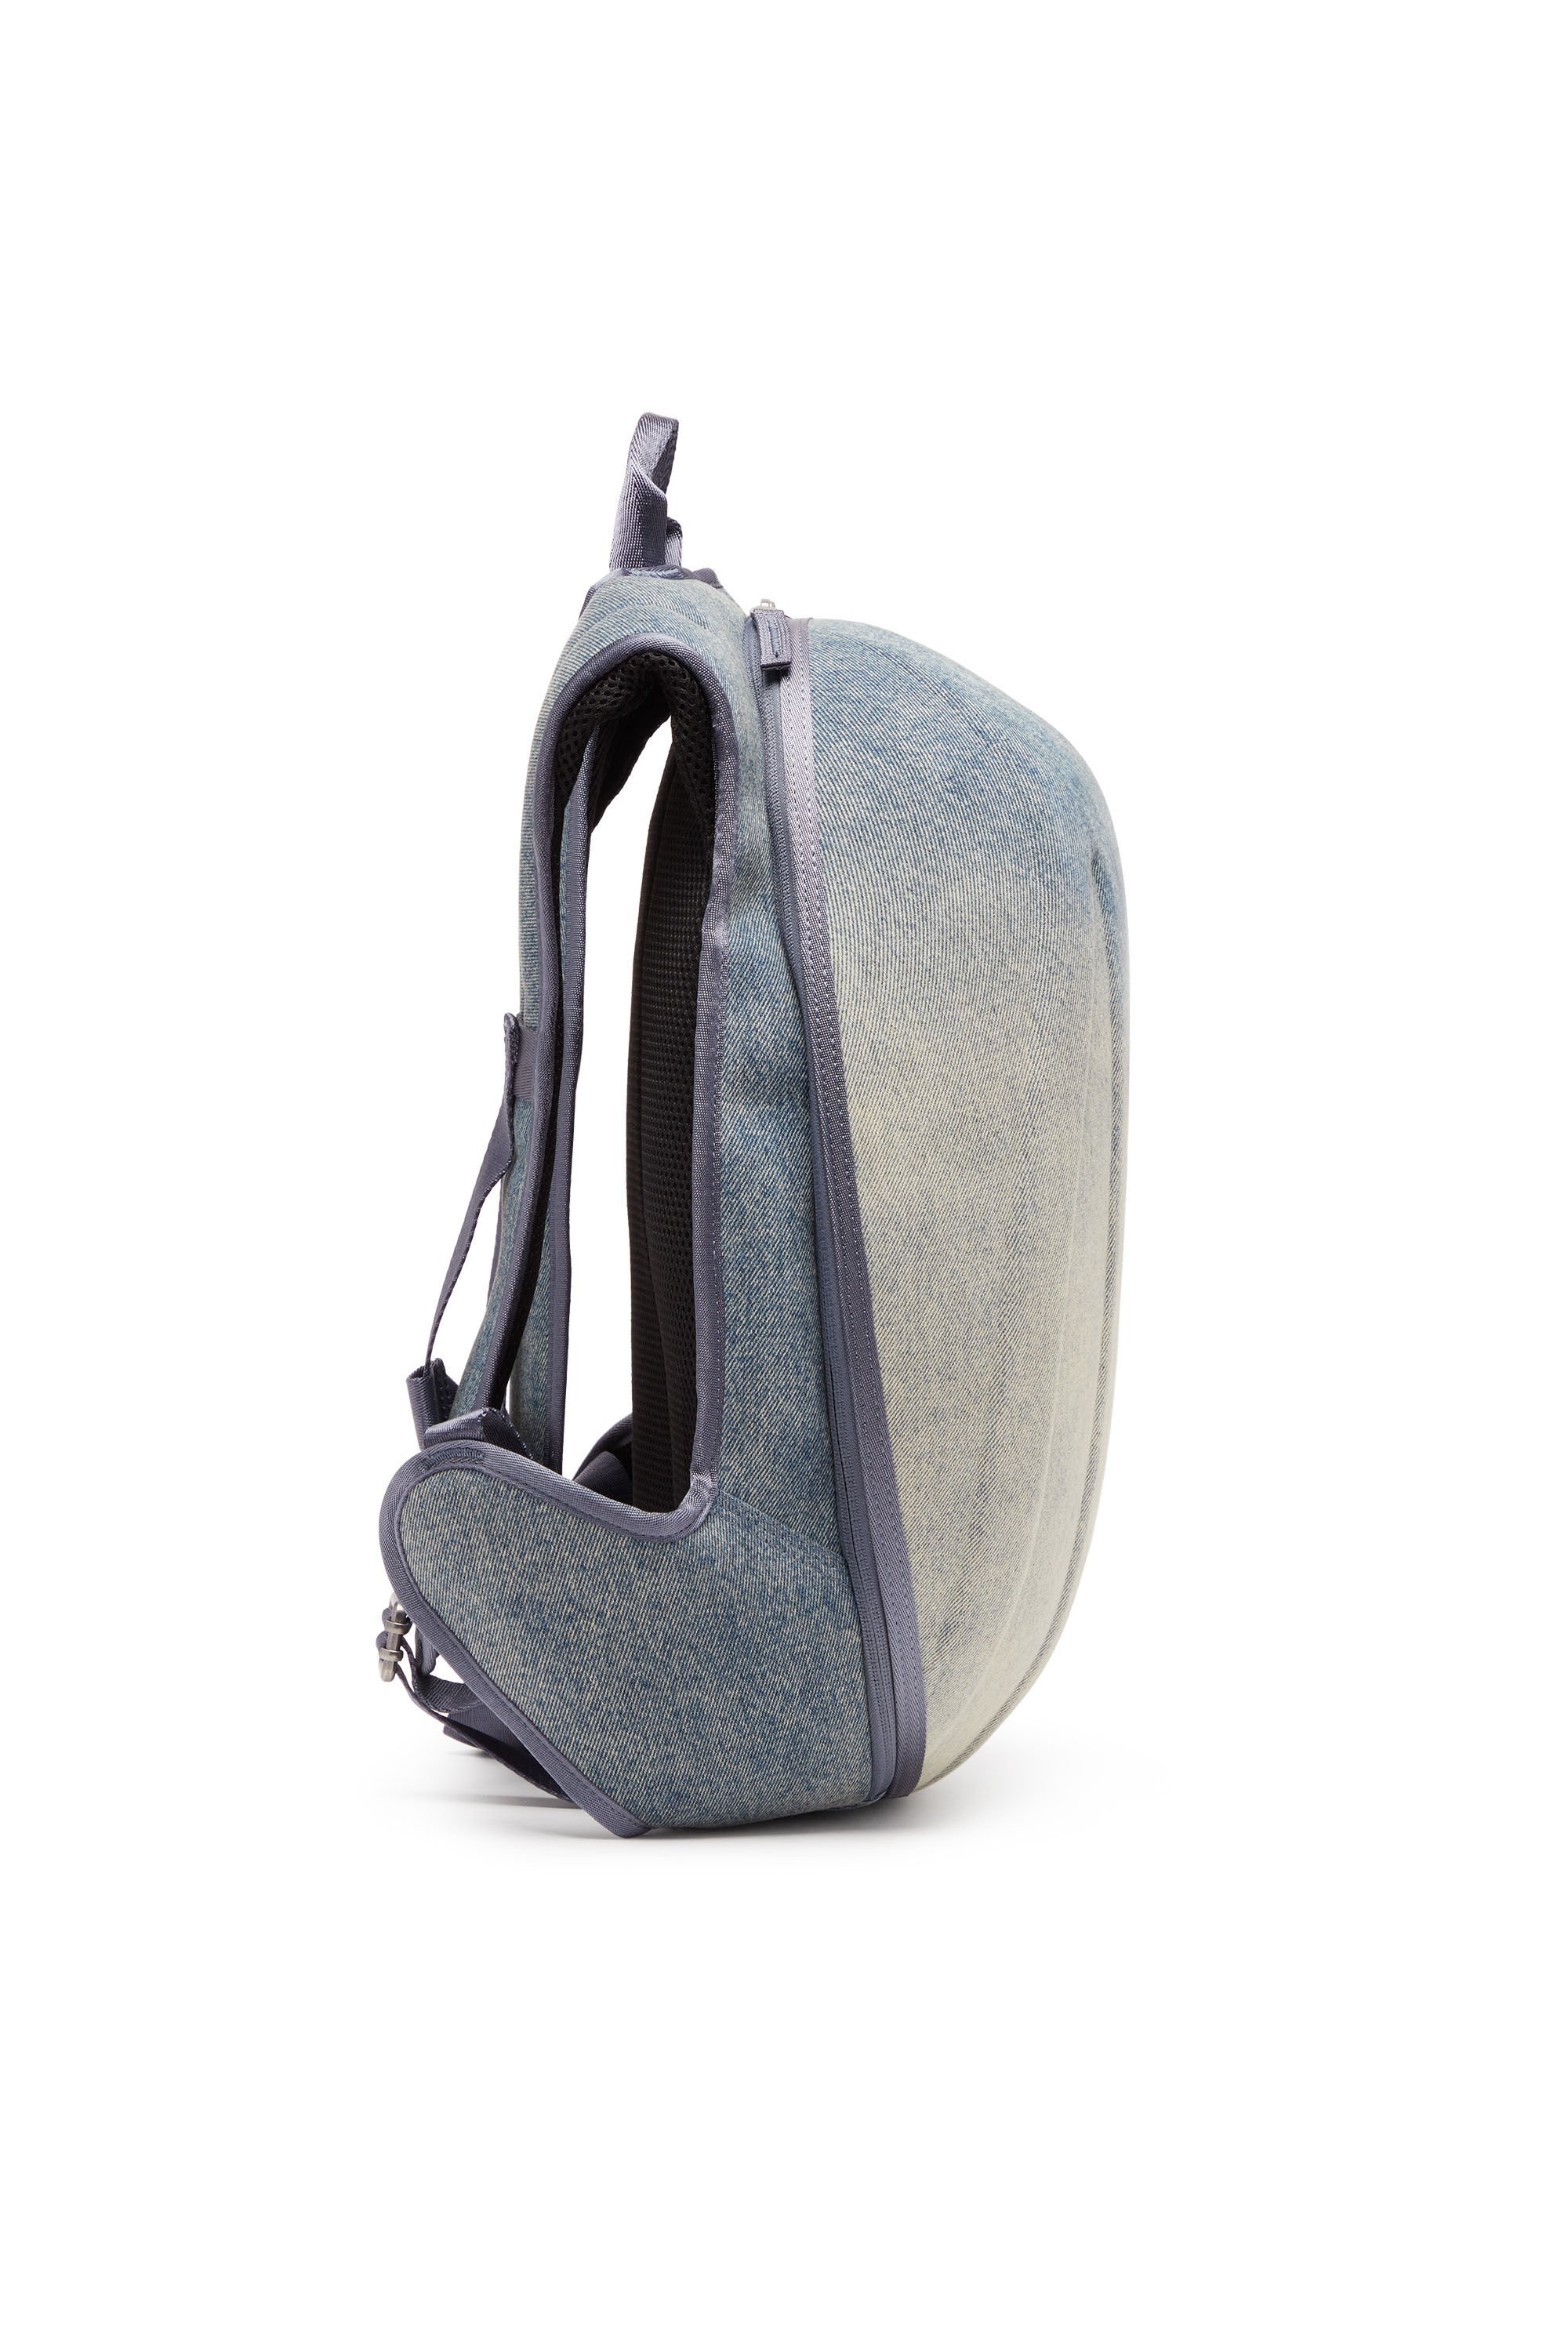 Diesel - 1DR-POD BACKPACK, Man 1DR-Pod Backpack - Hard shell denim backpack in Multicolor - Image 4